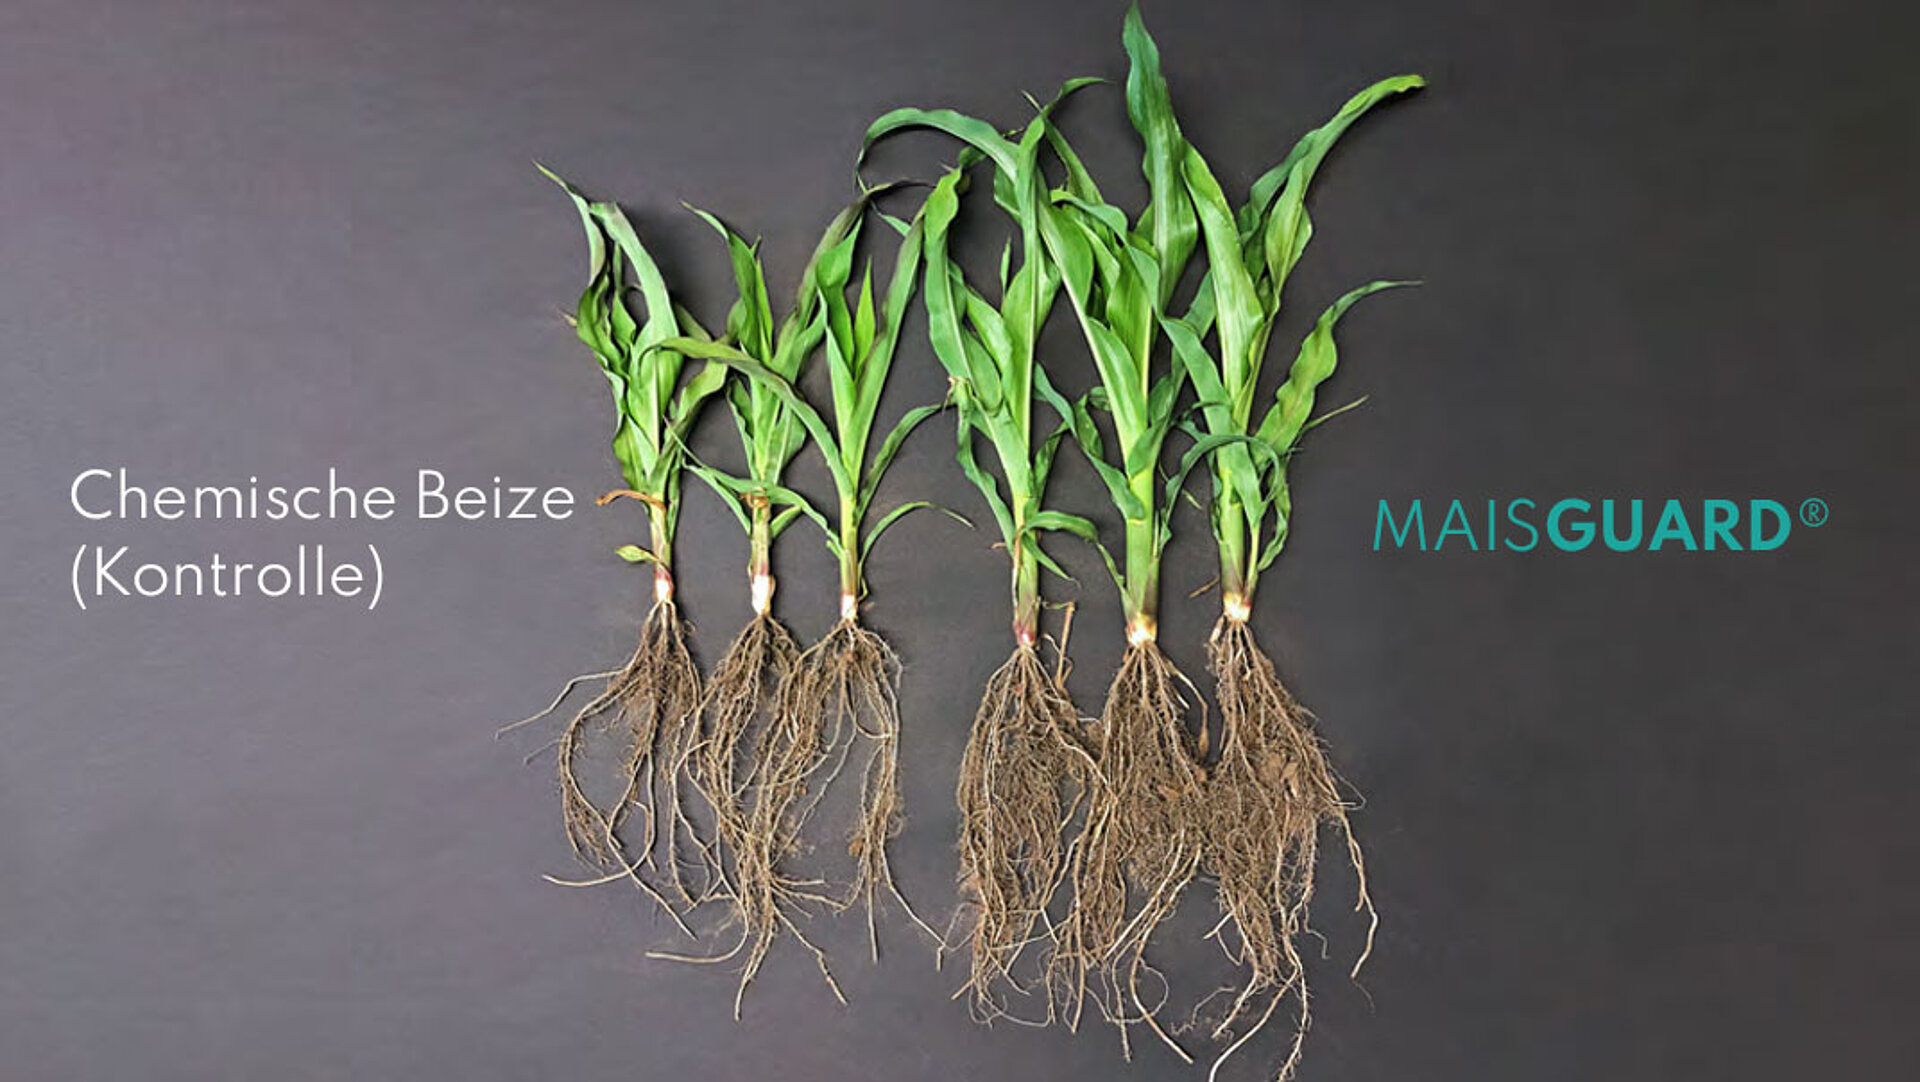 Das Wurzelwachstum von Maispflanzen wird verglichen zwischen der Chemischen Beize und MAISGUARD®.